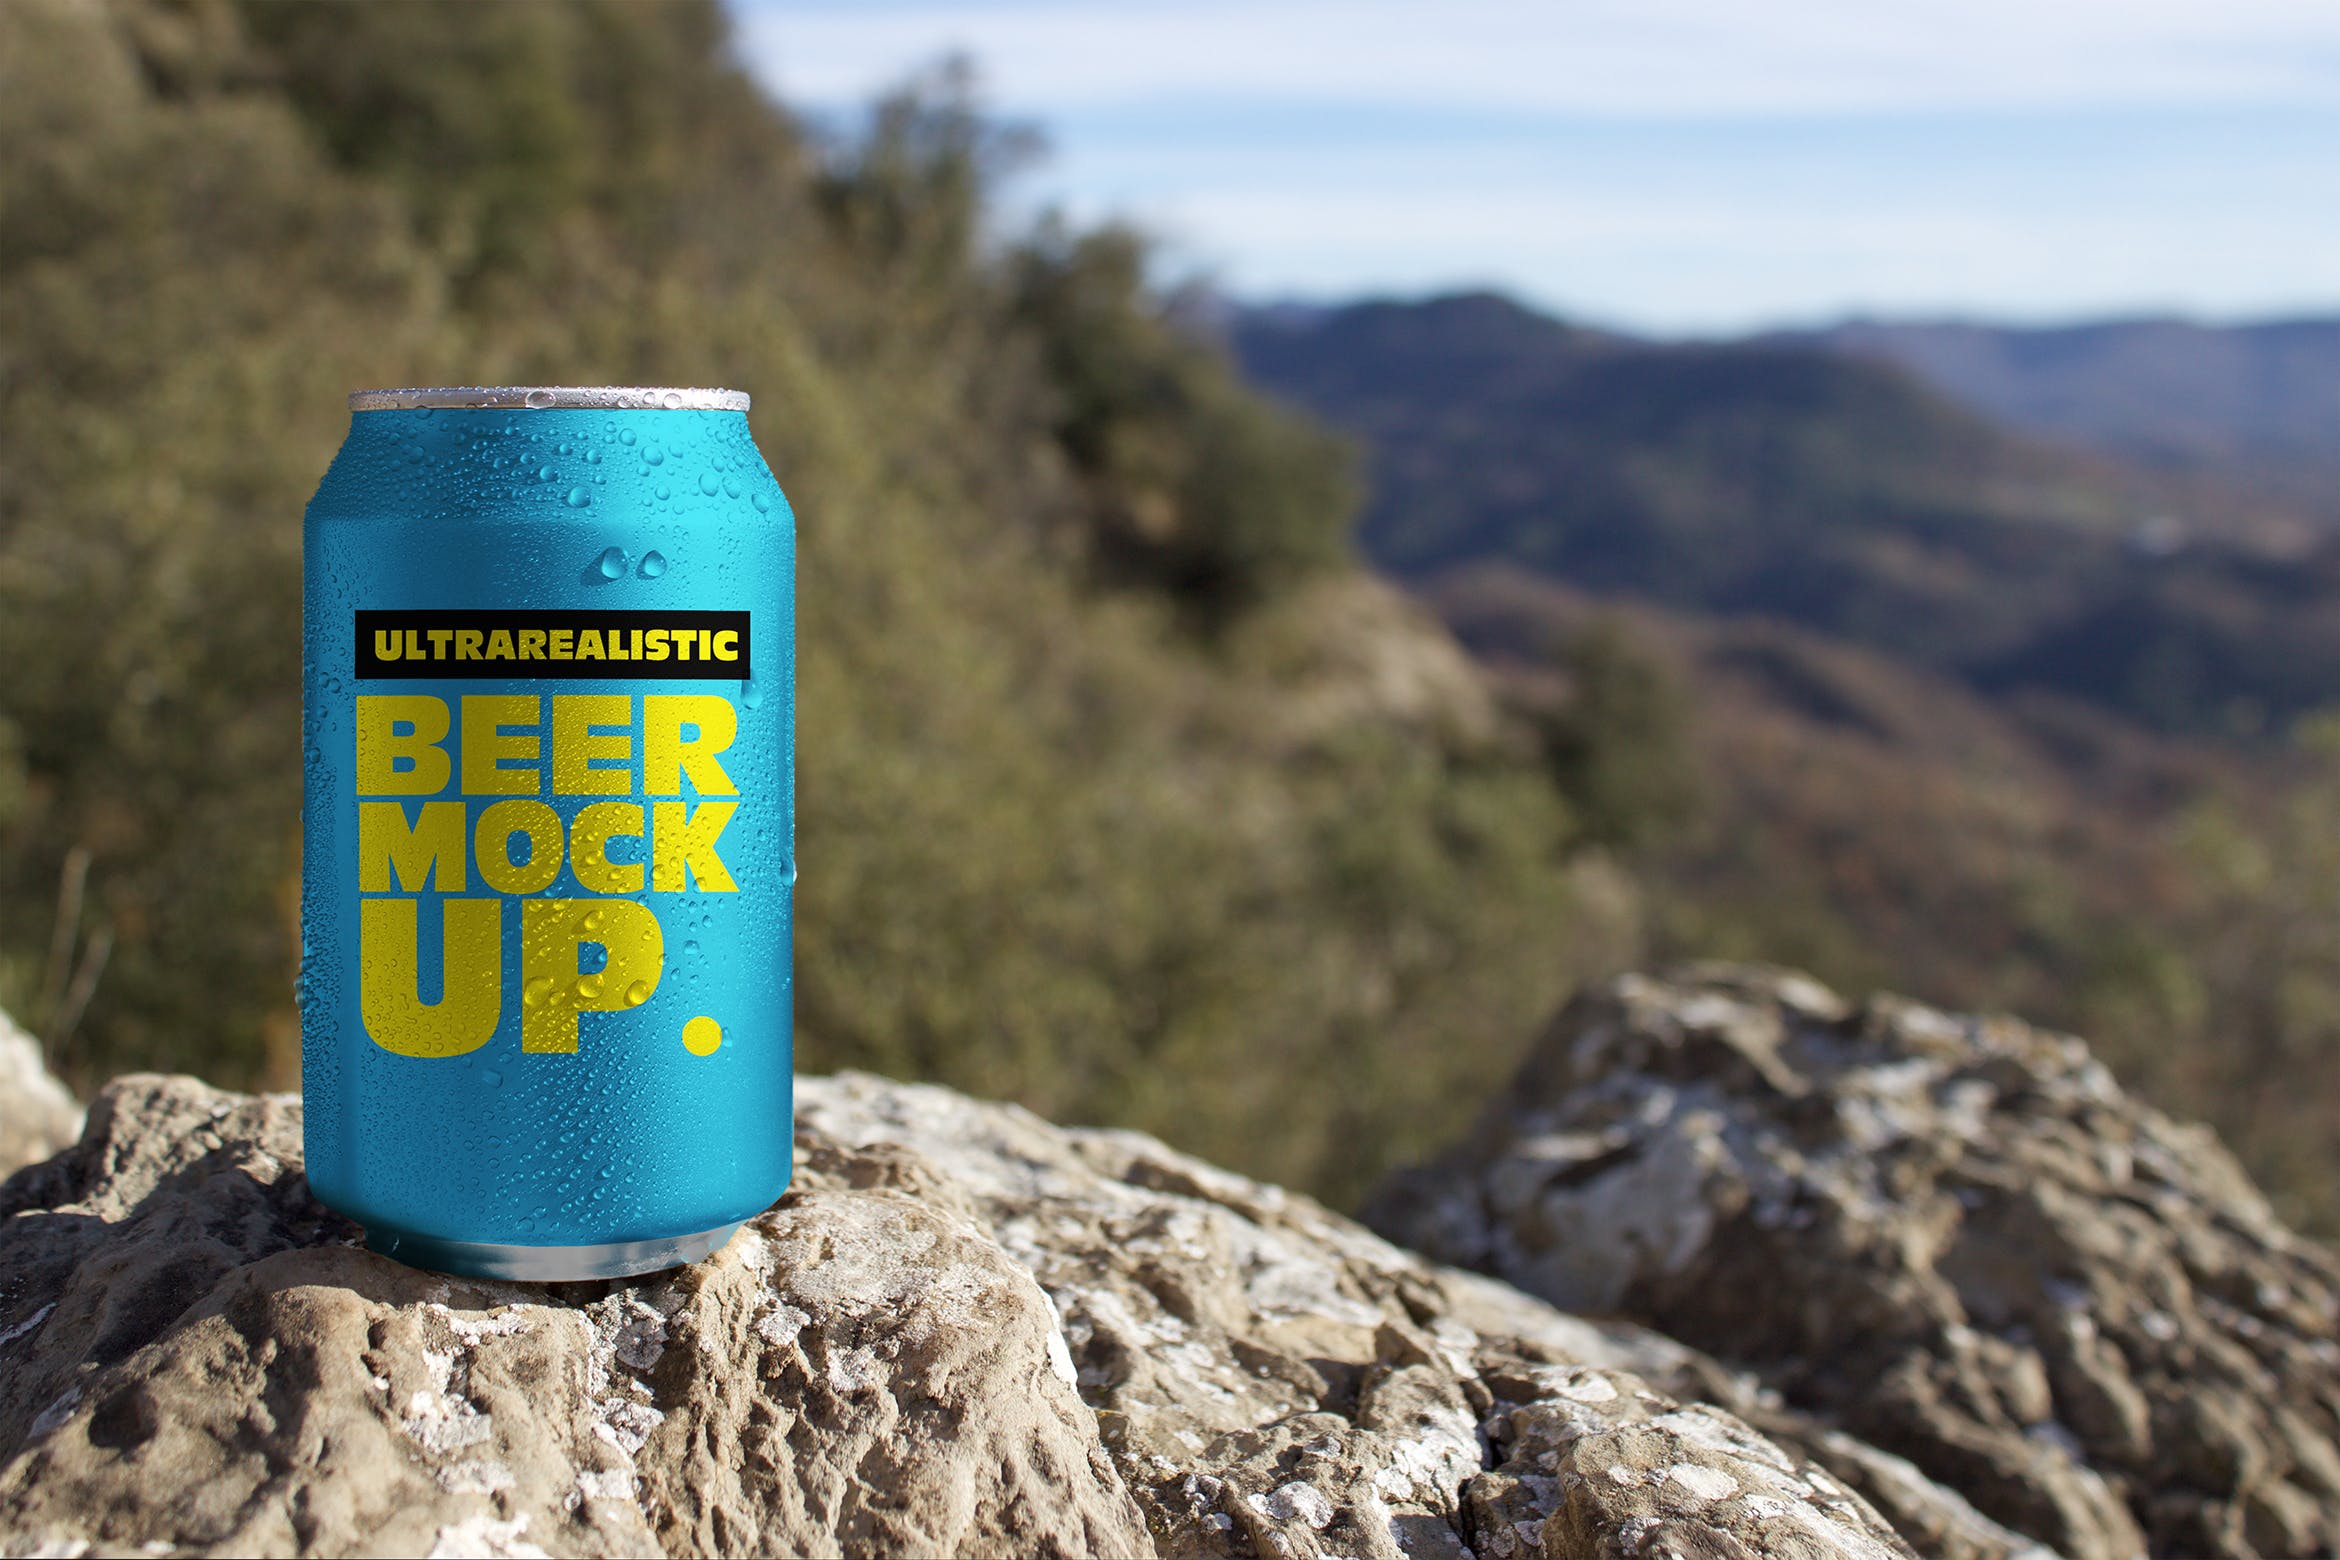 野外岩石场景啤酒易拉罐设计效果图第一素材精选 Nature Beer Can Mockup插图